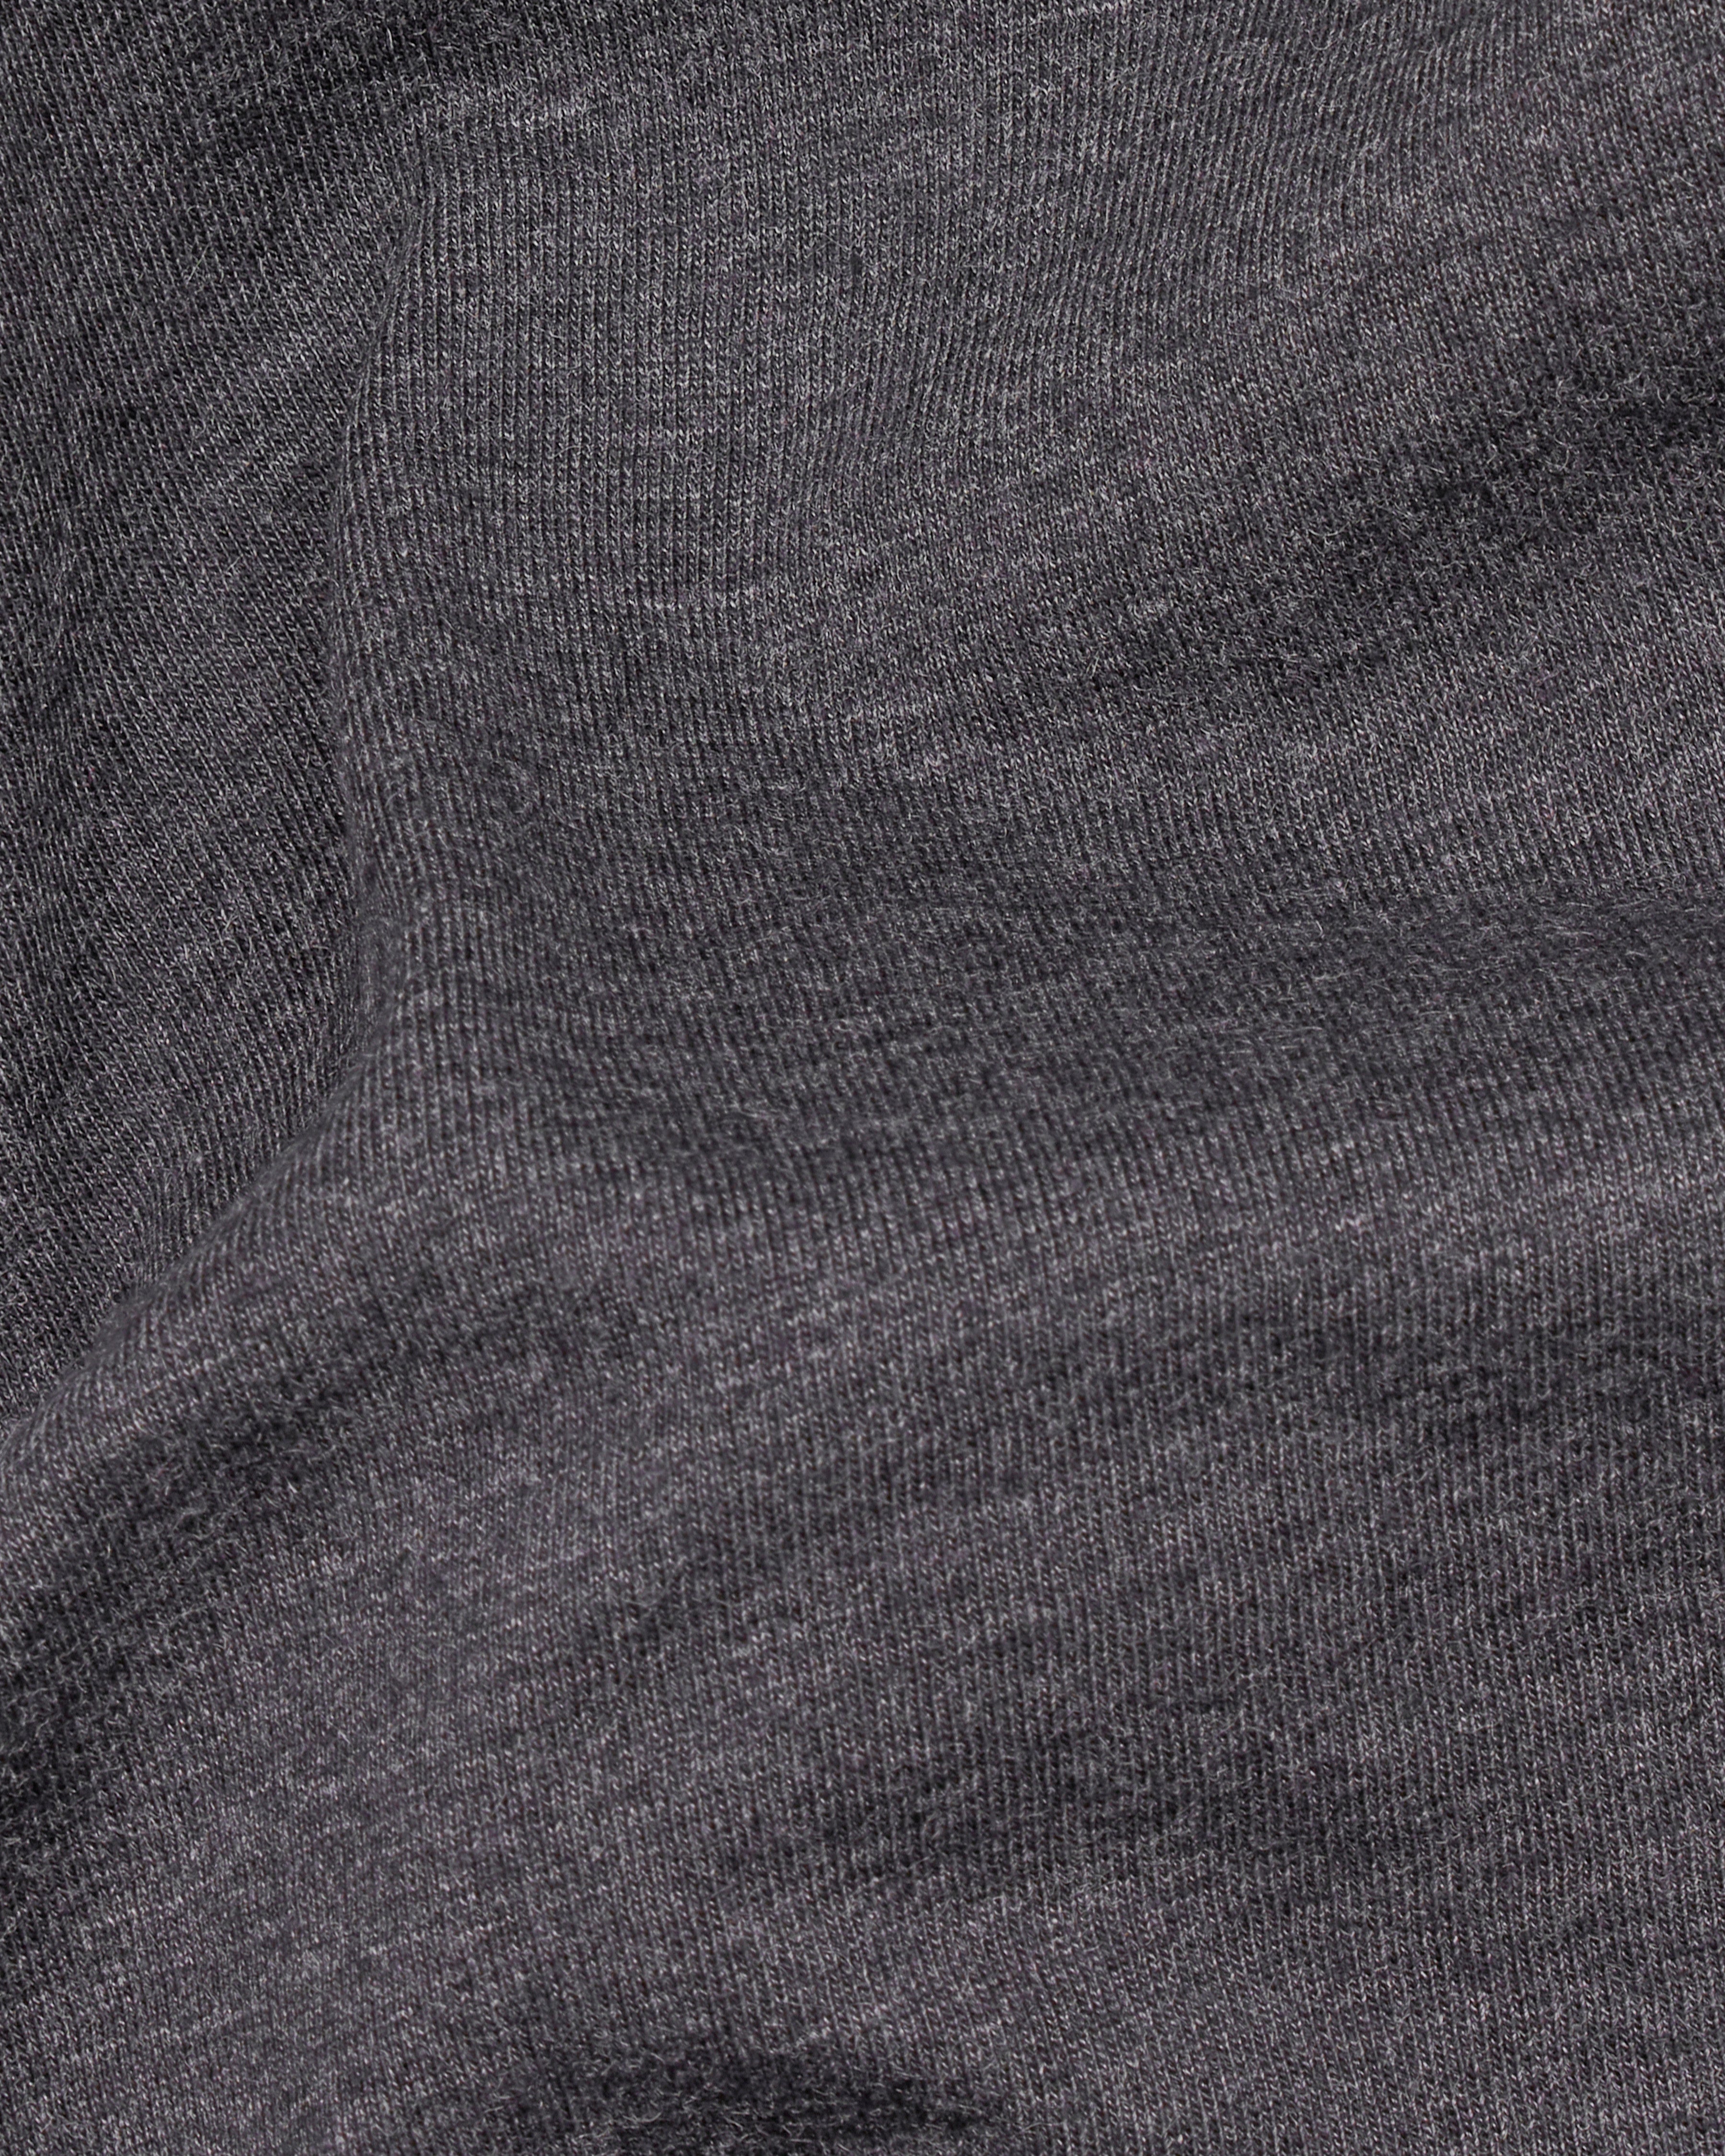 Gravel Gray Super Soft Premium Cotton Round Neck T-Shirt TS778-S, TS778-M, TS778-L, TS778-XL, TS778-XXL